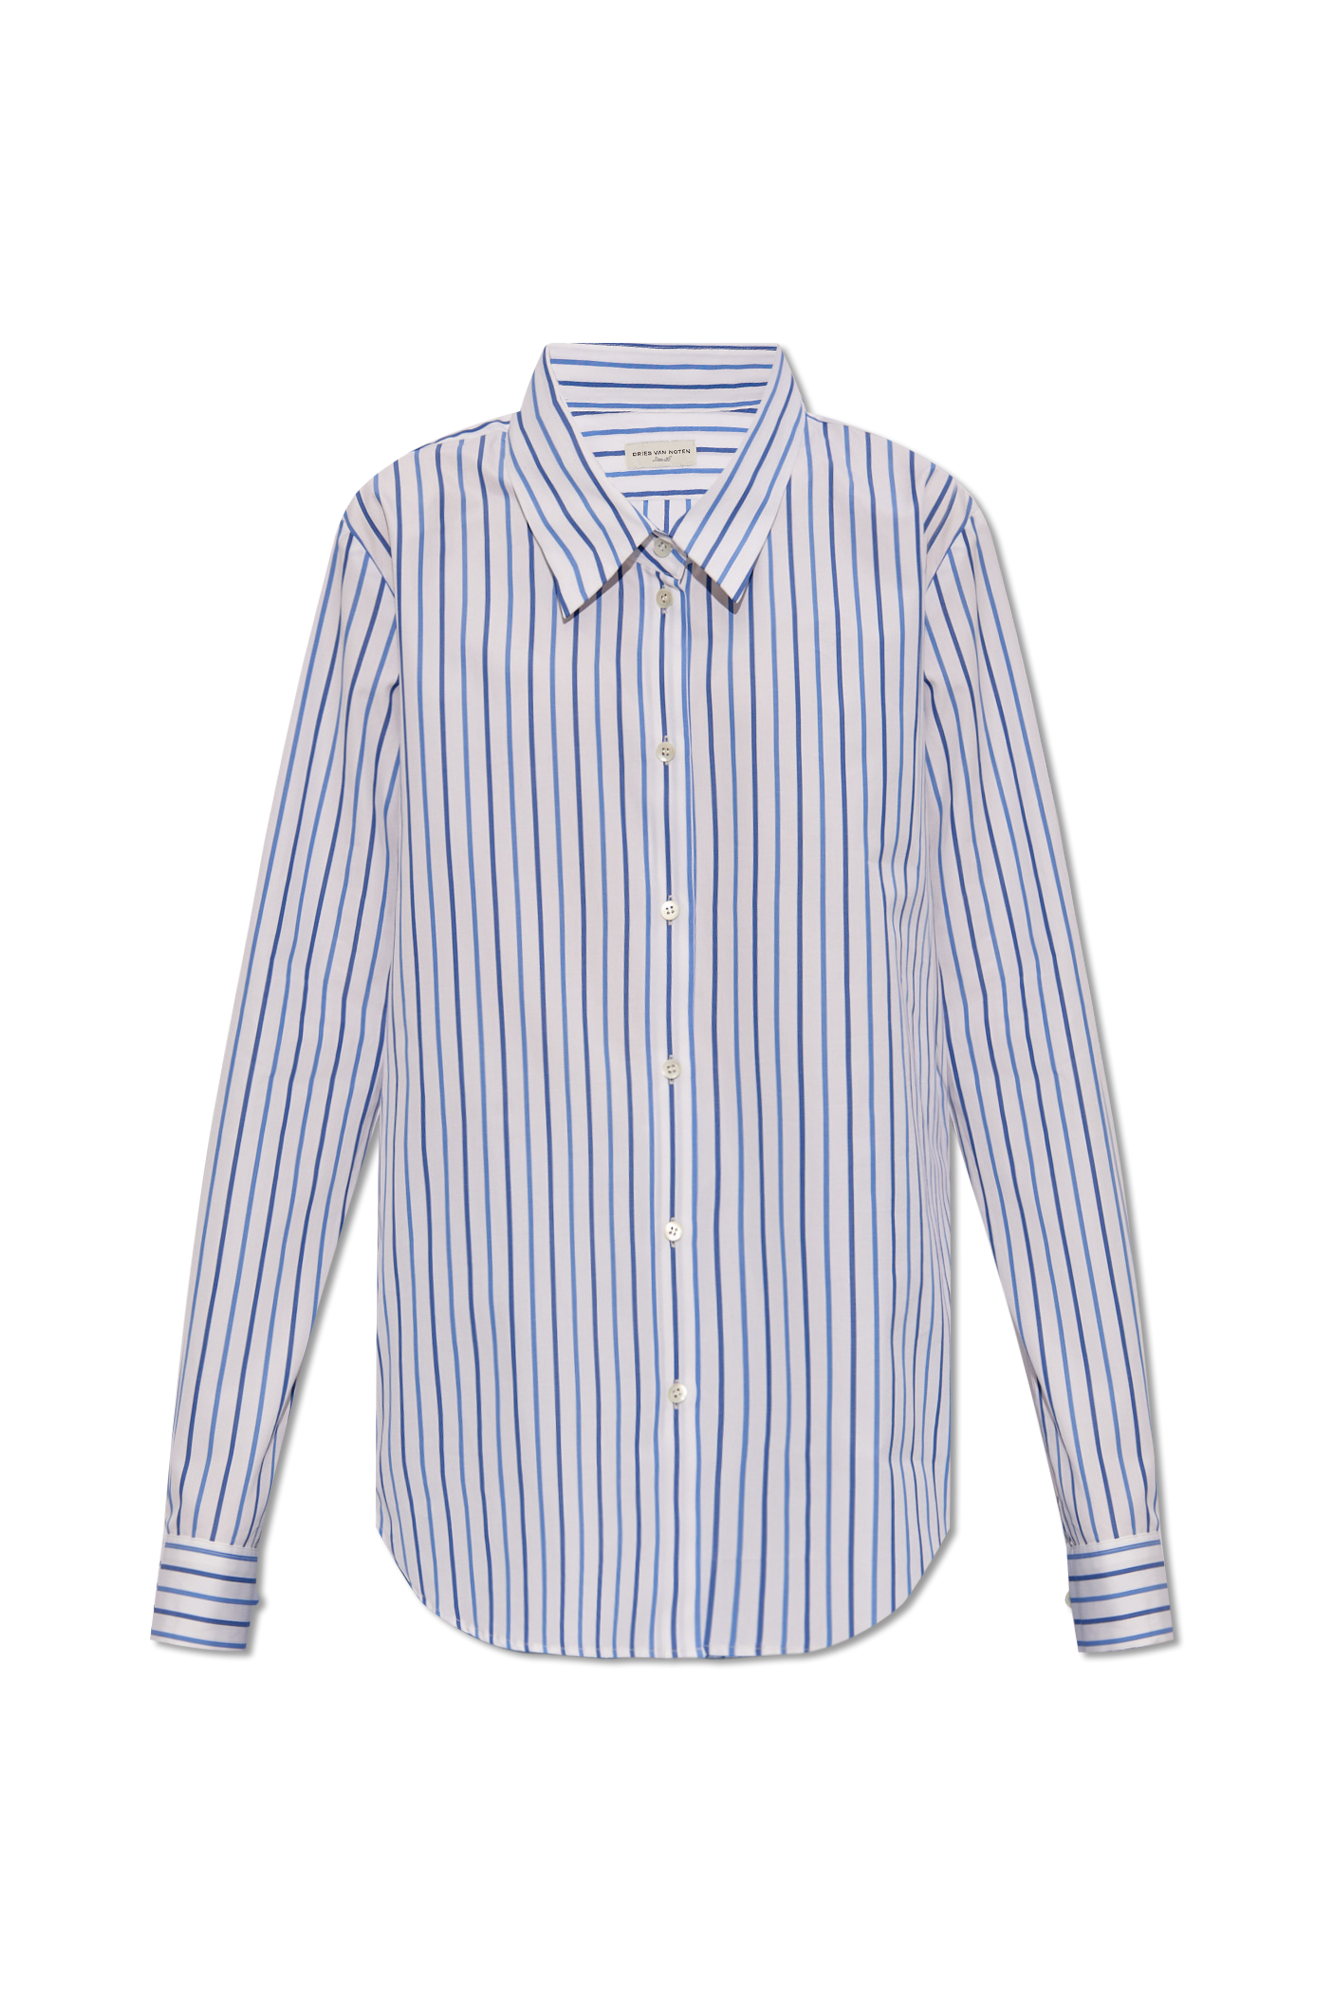 Dries van noten stripe shirt blue 48身幅50